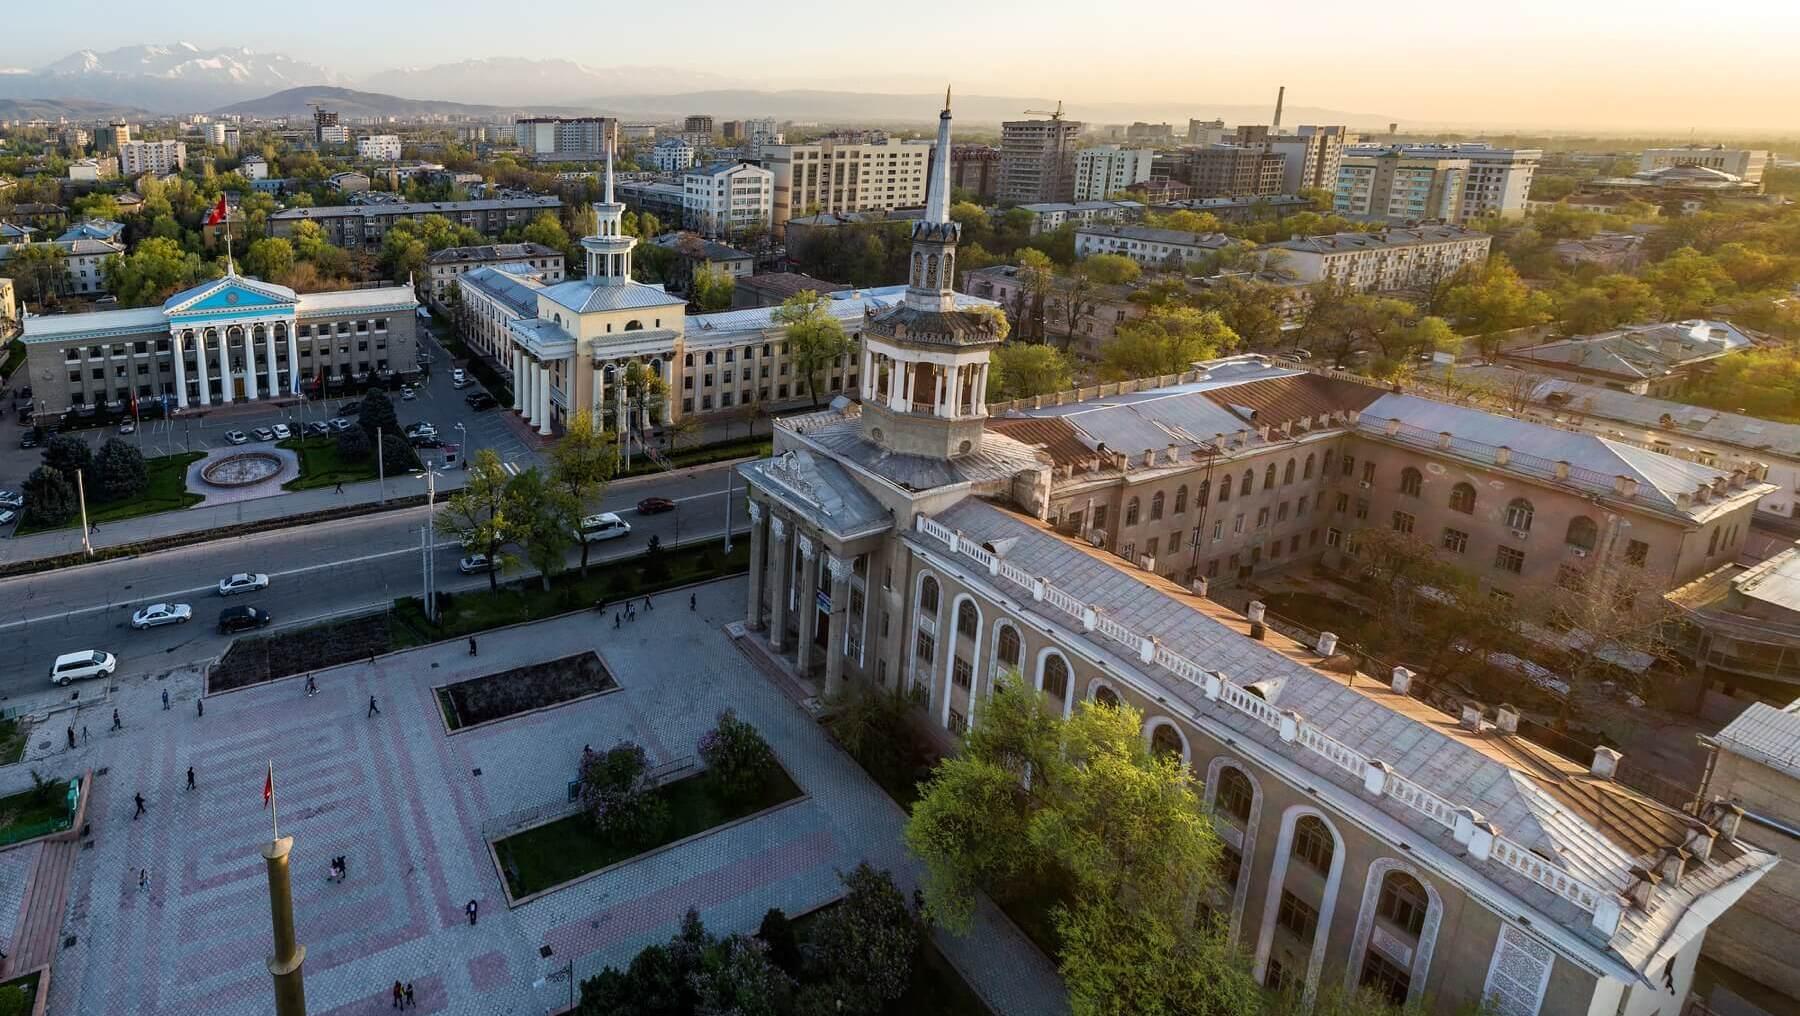 1. Machen Sie eine geführte Tour durch die Stadt Bischkek